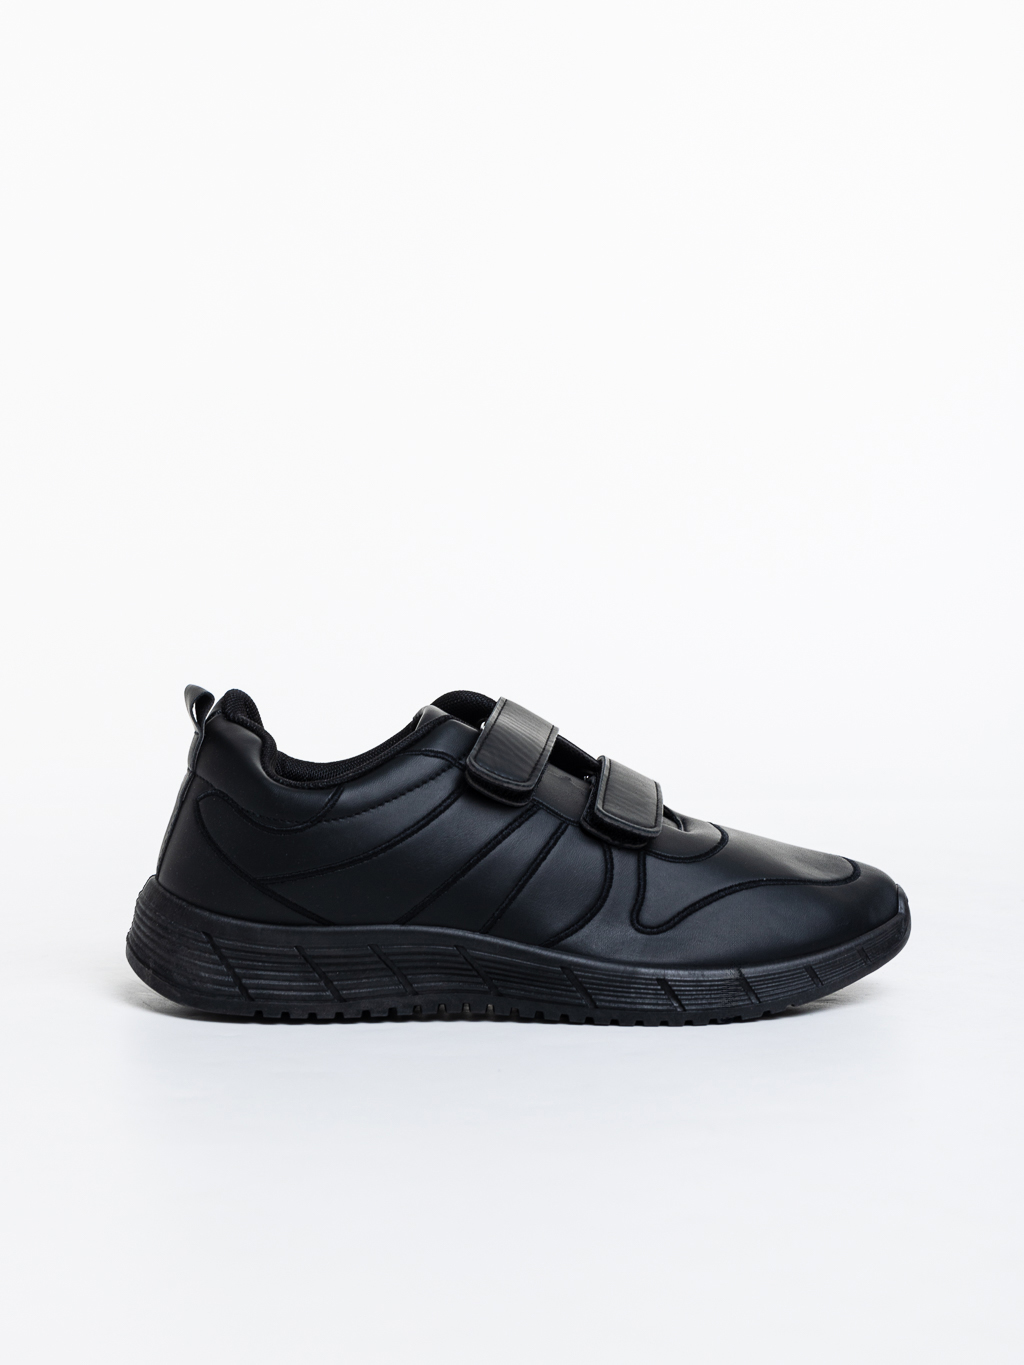 Ανδρικά αθλητικά παπούτσια μαύρα από οικολογικό δέρμα  Dexter - Kalapod.gr